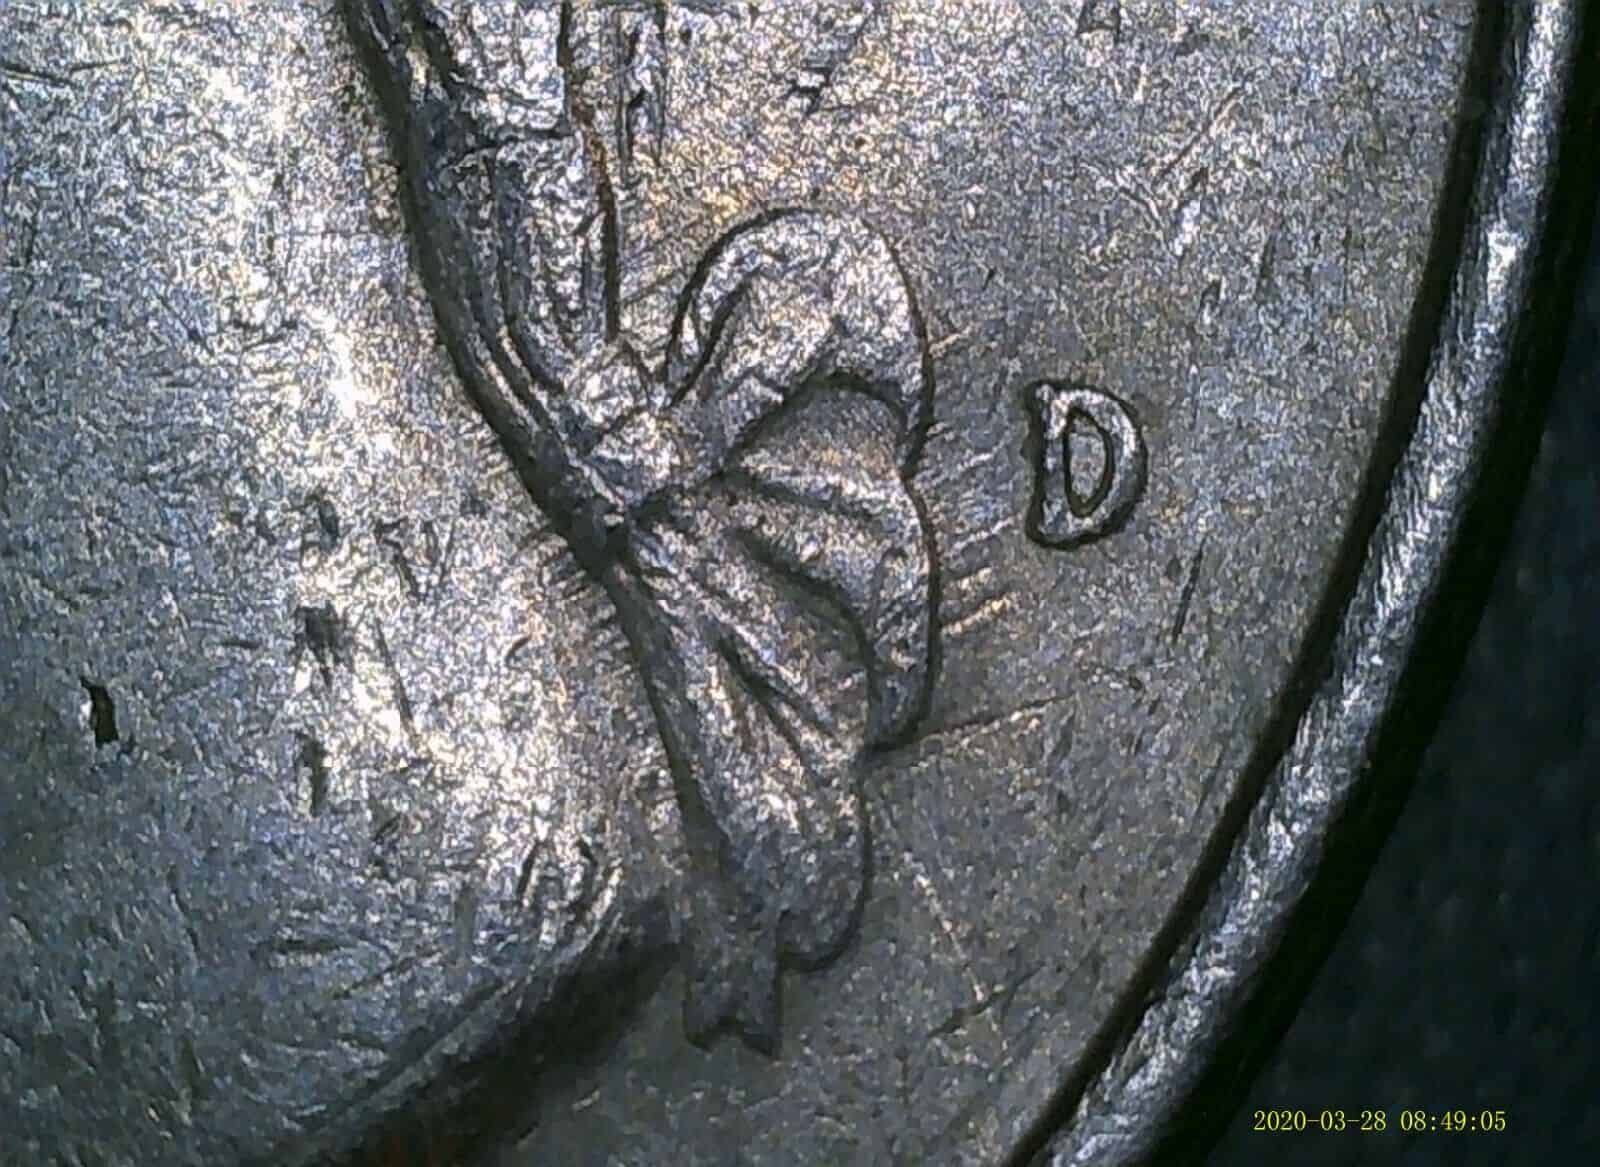 1991 D Washington Quarter Finger Strike Error Coin